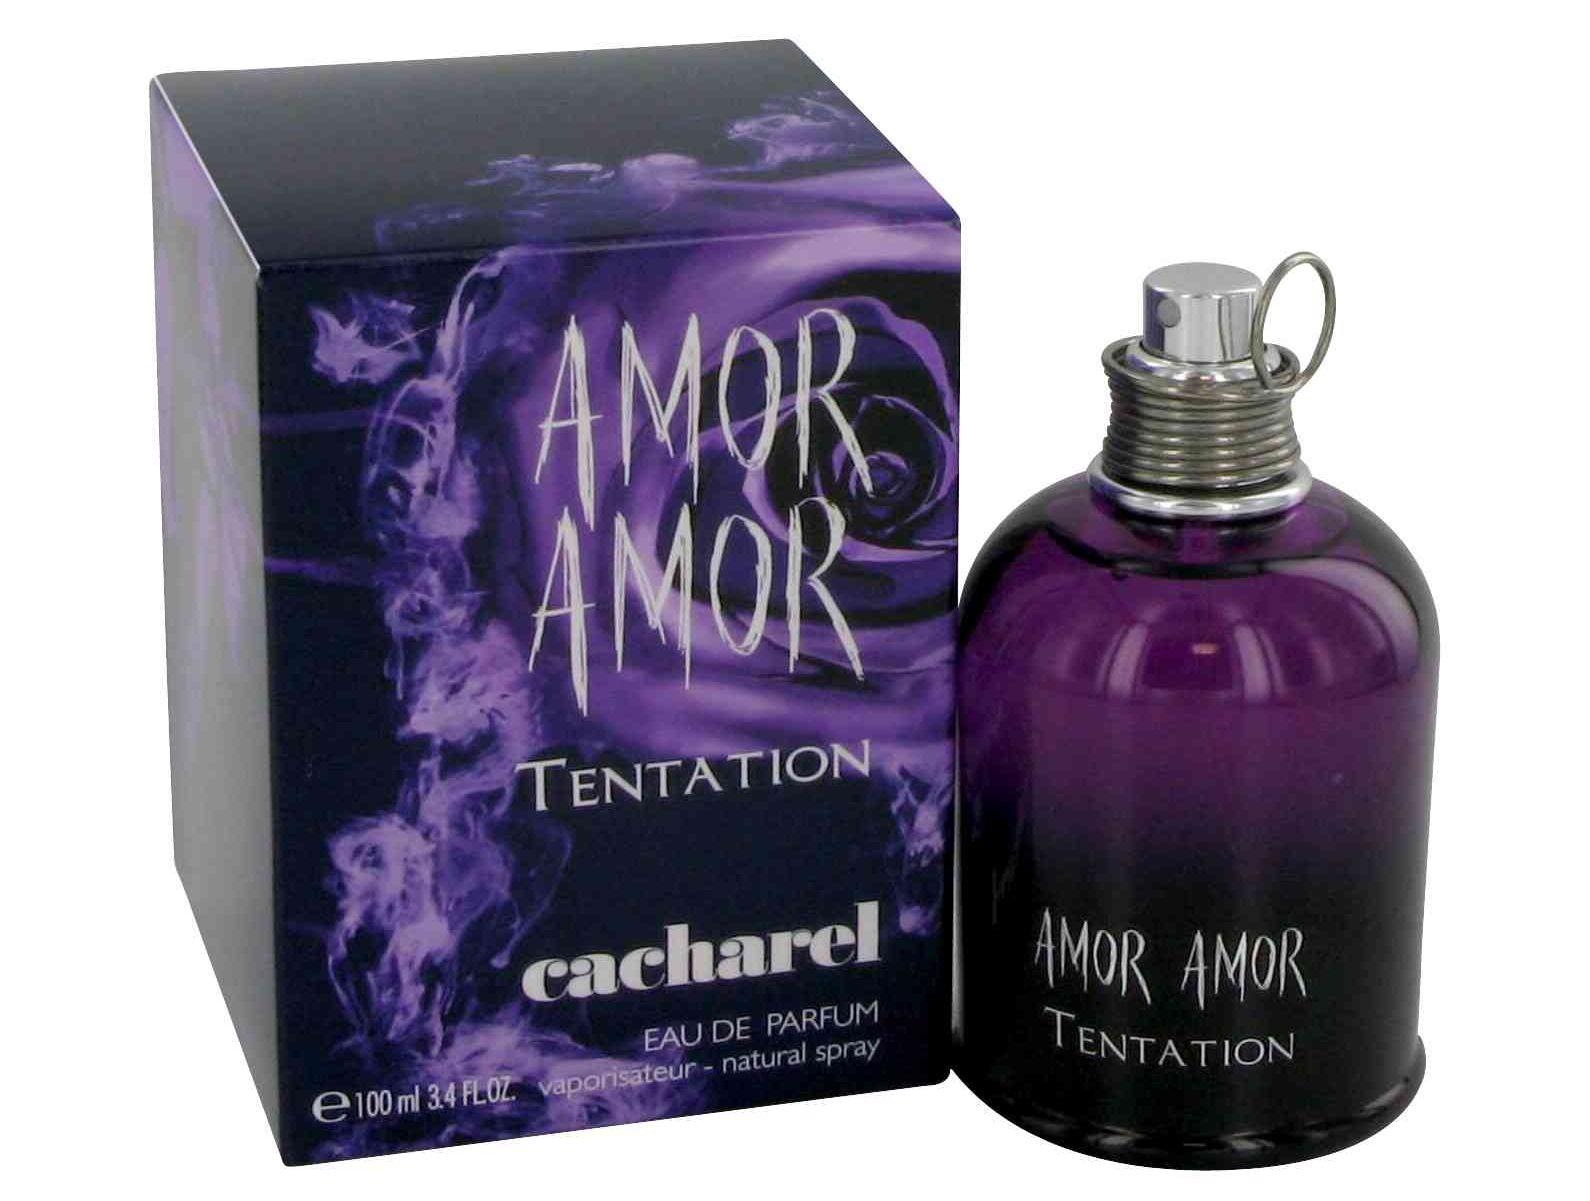 Foto Amor Tentation Cacharel eau de parfum para mujer vaporizador 50 ml foto 586445